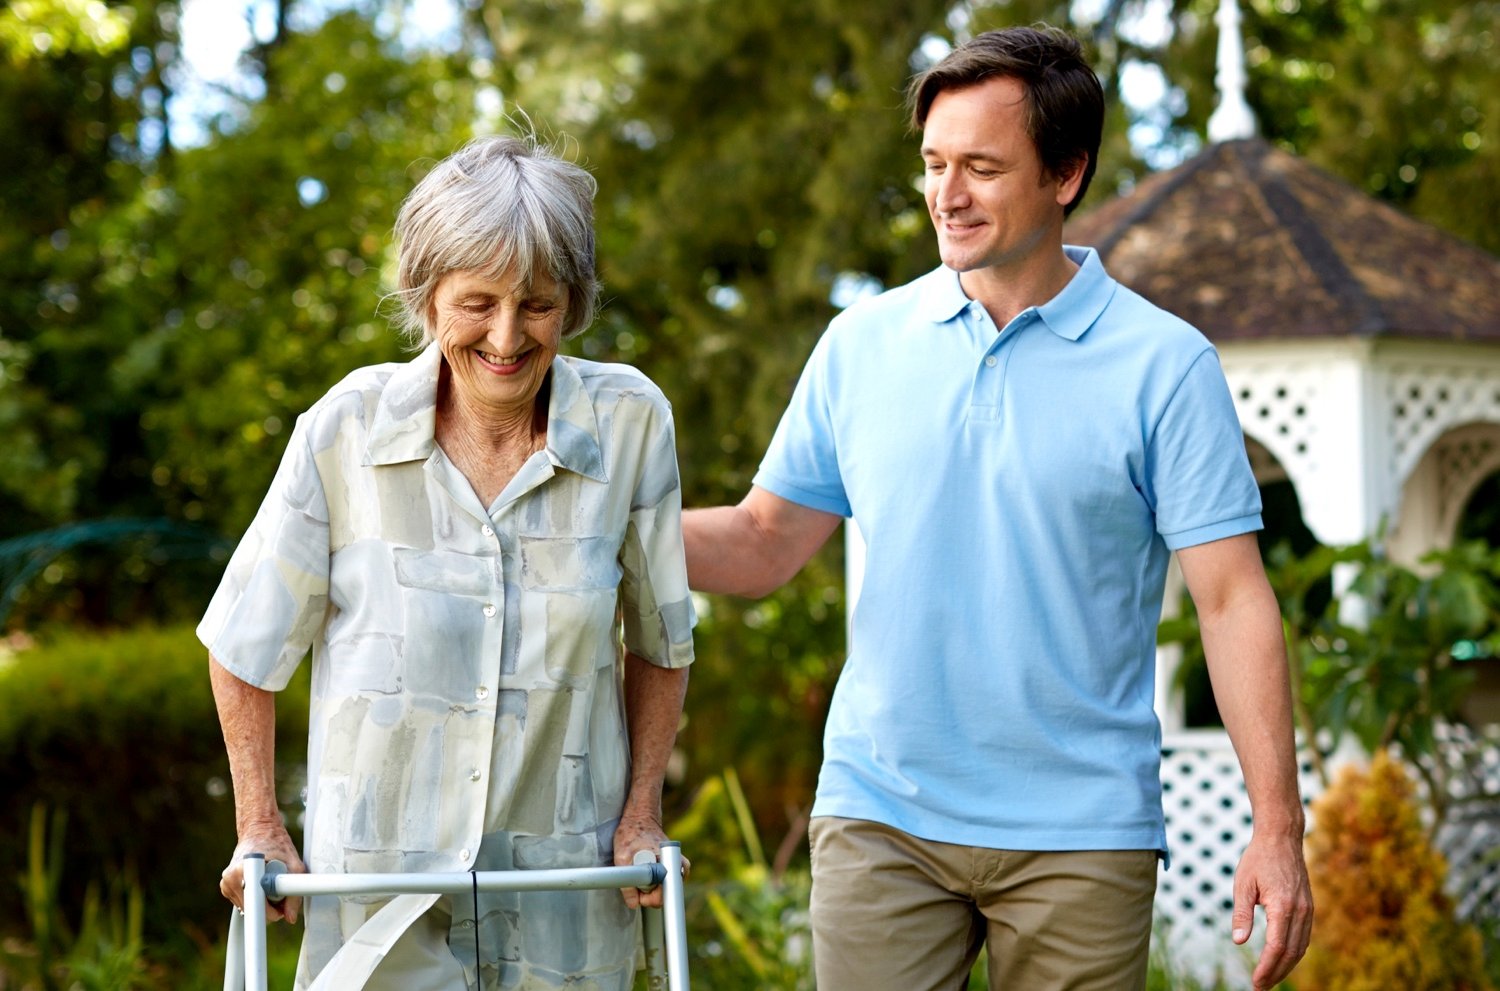 Caregiver helping senior with walker in garden